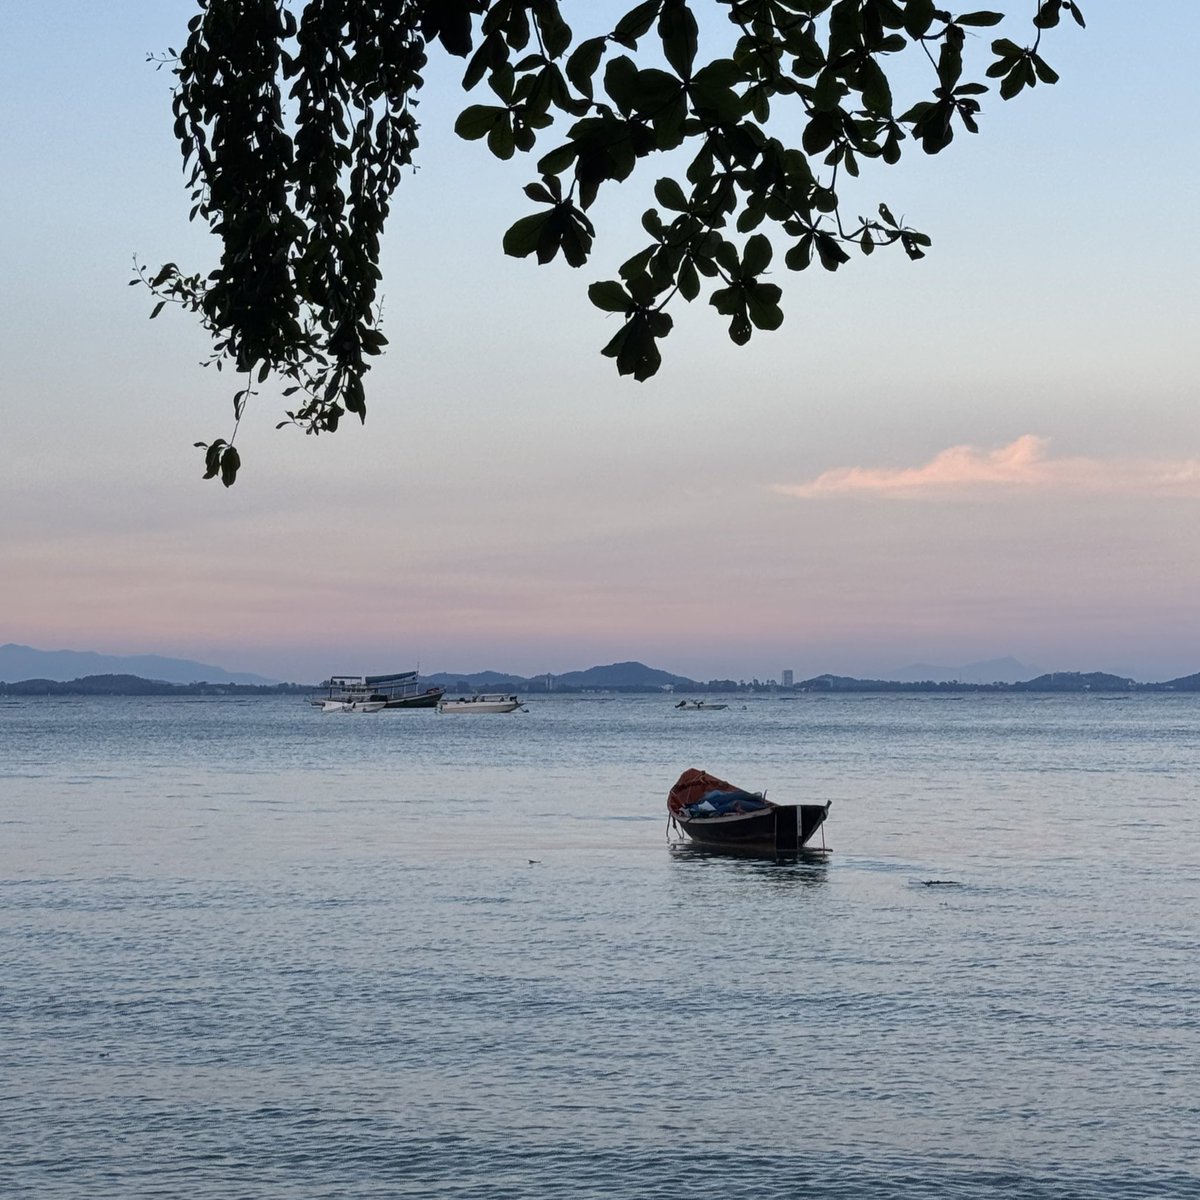 แนะนำที่พักบนเกาะเสม็ด วิวทะเลชัดตาแตก สวยมากกก Baan Ploy Sea 🌊🏝️ ห้องกว้างนอนกับเพื่อน 3 คน โคตรสบาย เห็นทั้งพระอาทิตย์ขึ้น และแสงเย็น mood ดีสุดๆ ถ่ายรูปเล่นน้ำสะใจมาก